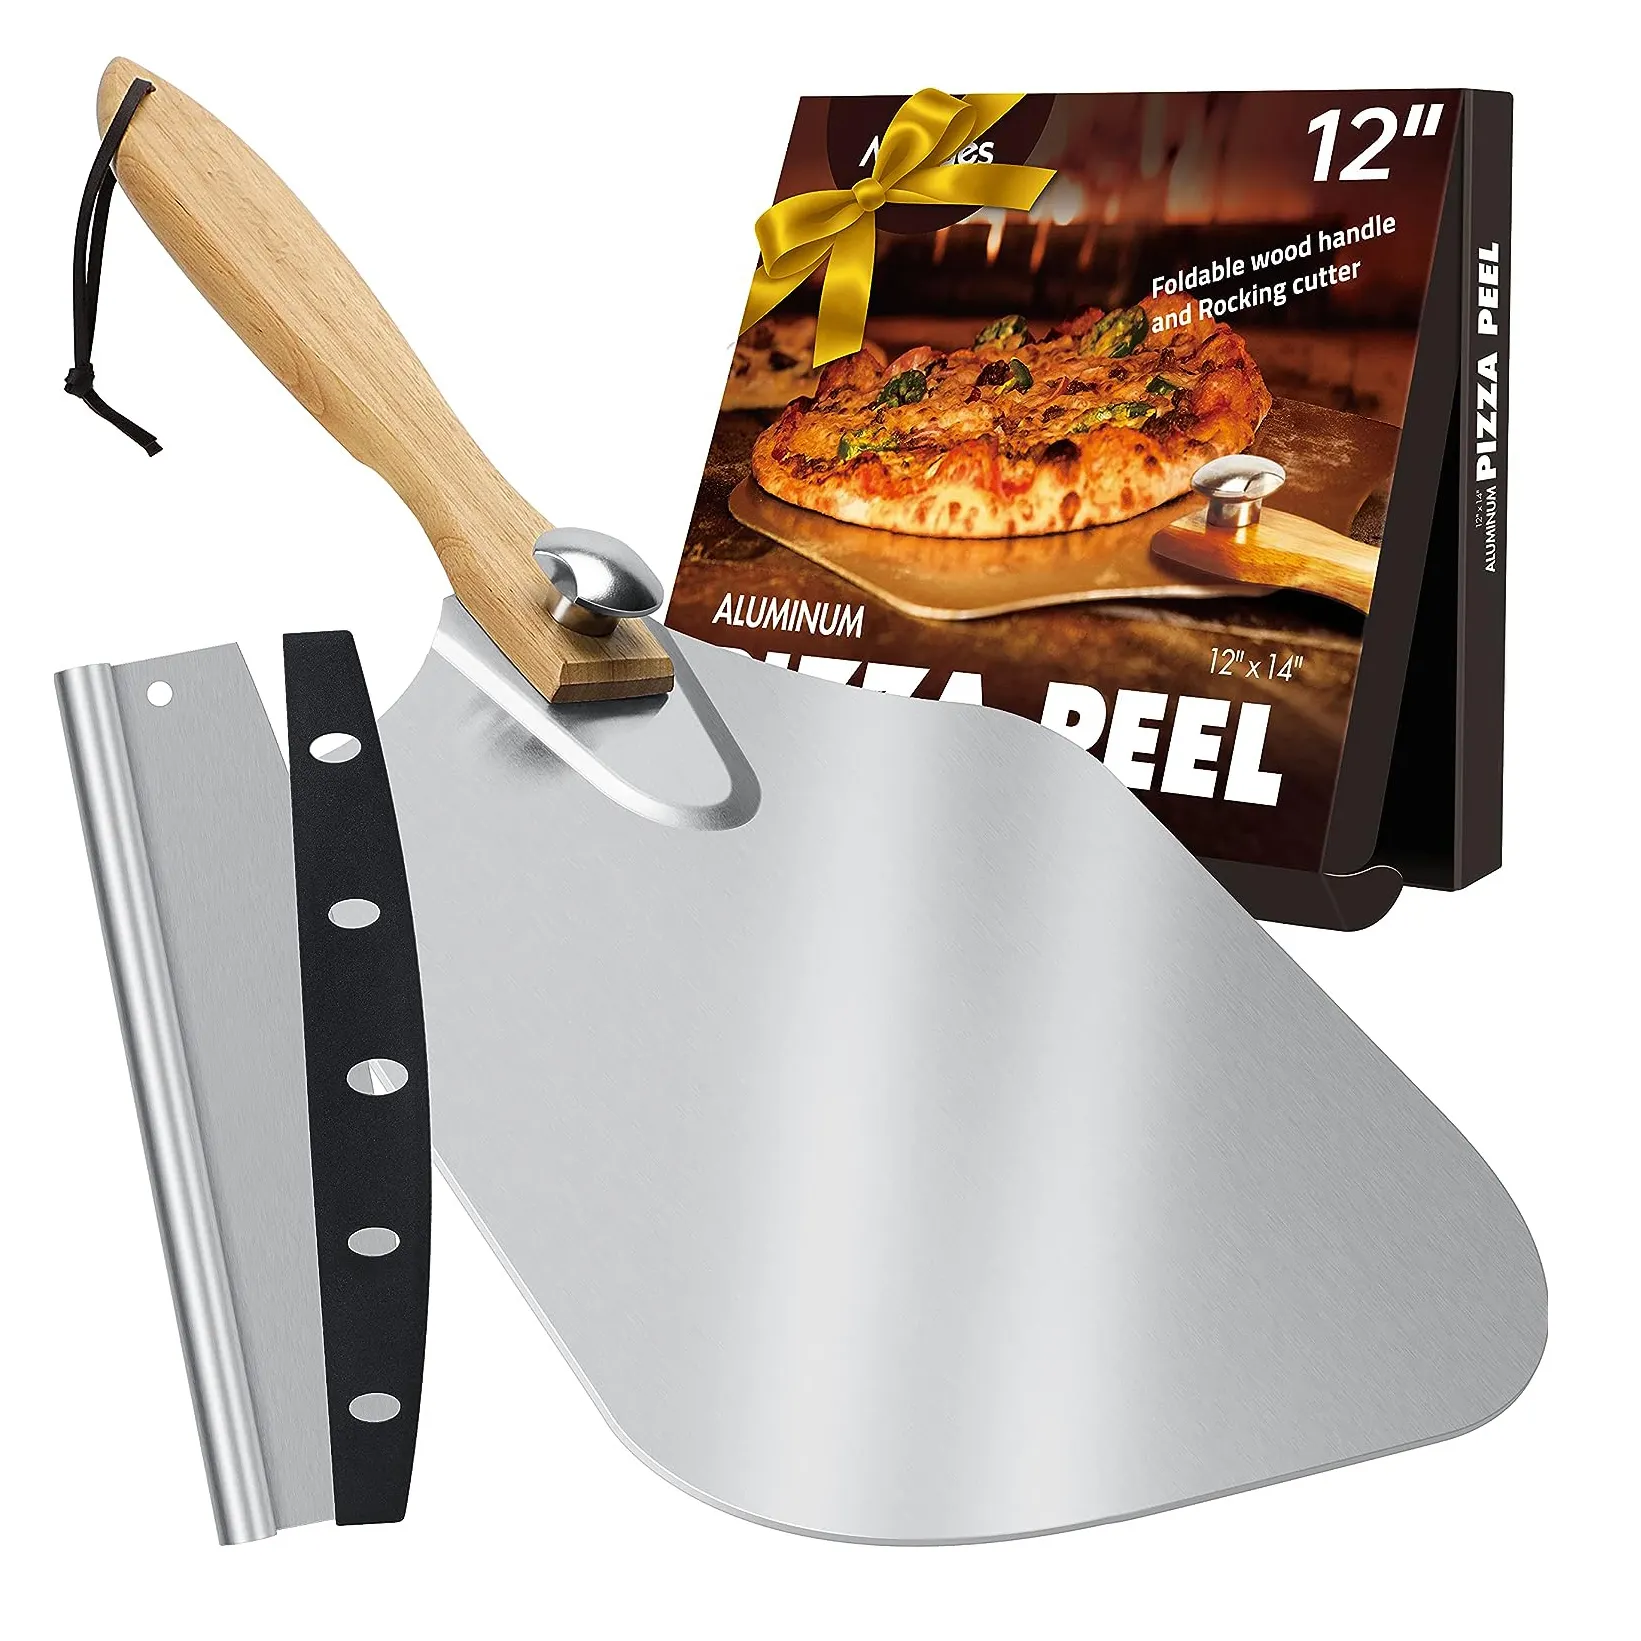 Espátula de alumínio para pizza, espátula de metal para pizza de 12"x14" com cortador de balancim, alça de madeira dobrável